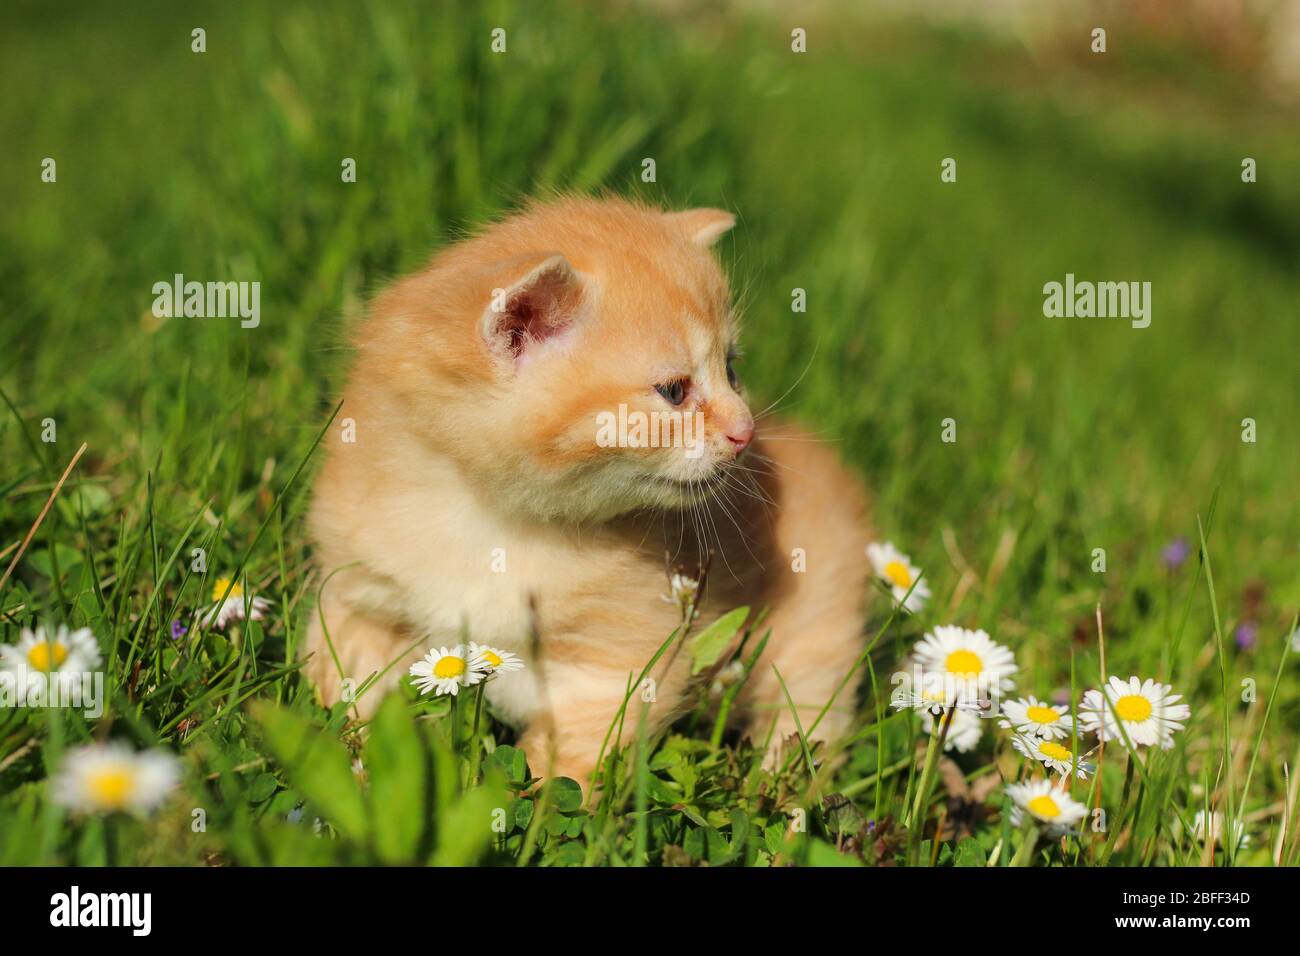 Il ritratto di un giovane gattino di tre settimane nell'erba e nei fiori. Aspetto carino e felice anche con un po 'di squinting occhi. Foto Stock